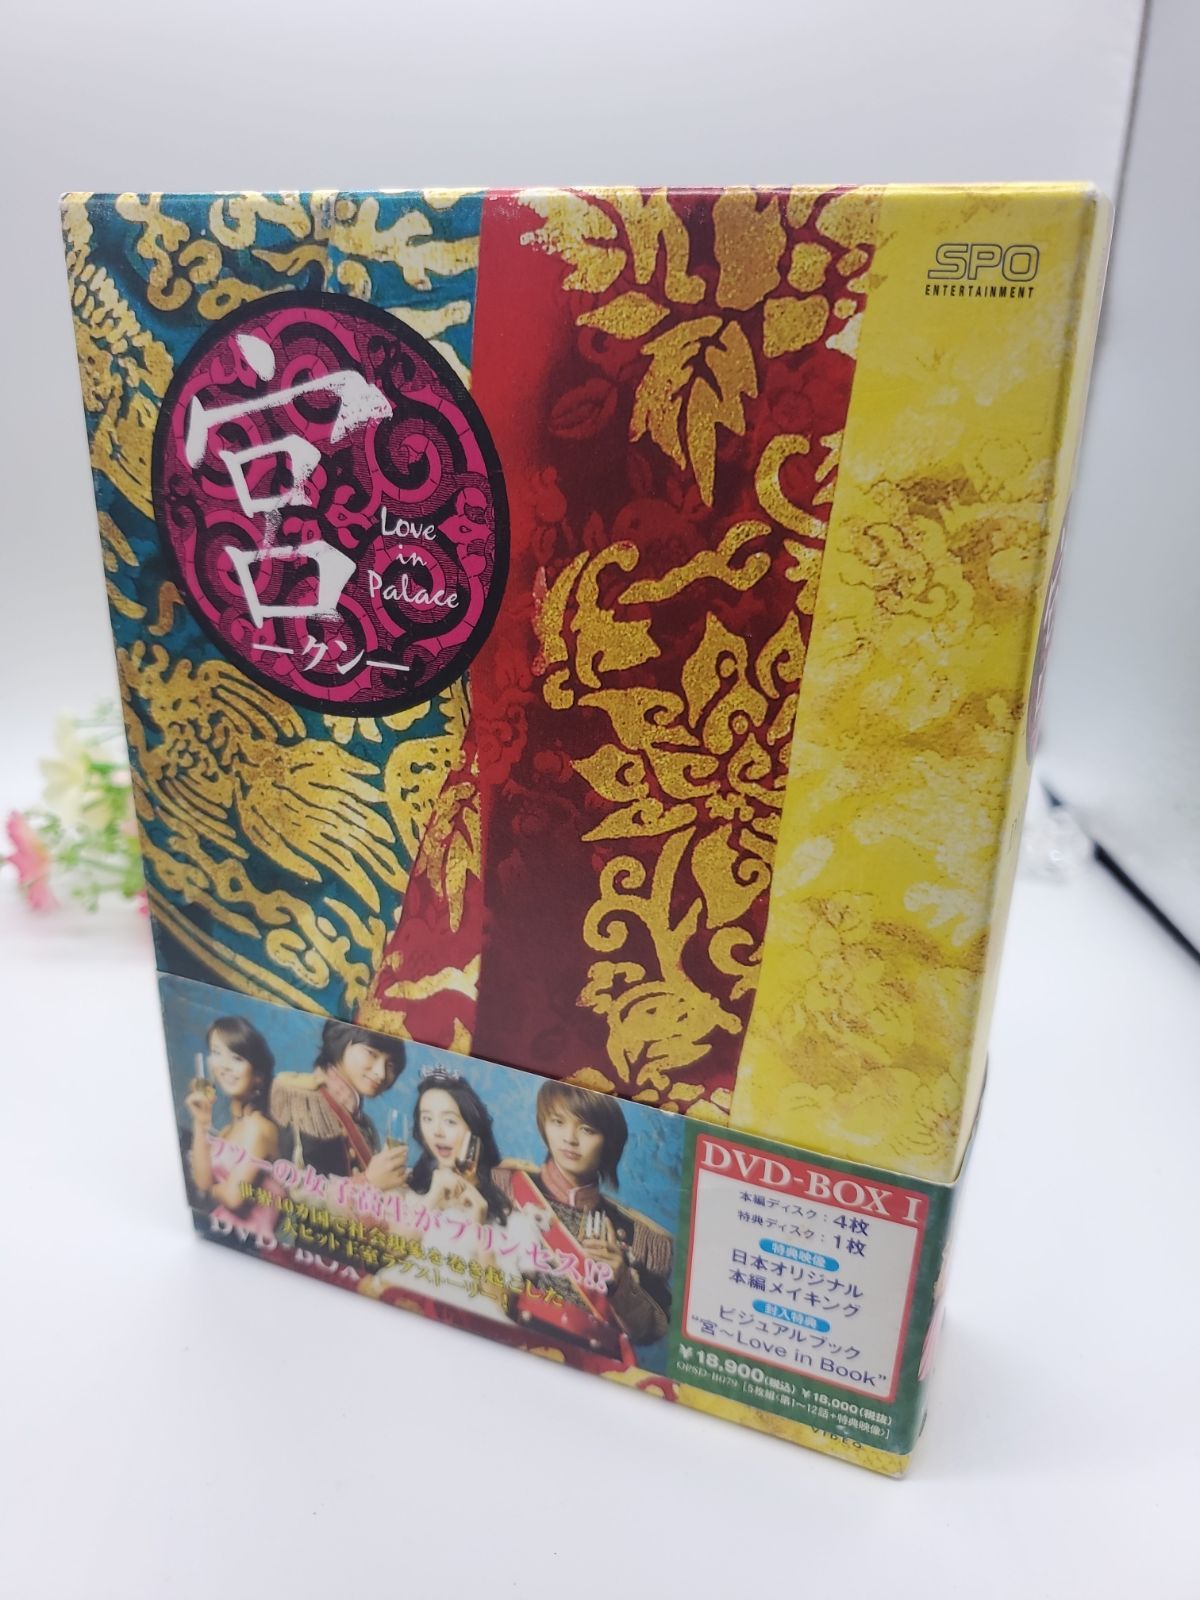 宮(クン)～Love in Palace DVD-BOX Ⅰ＆Ⅱ - 外国映画